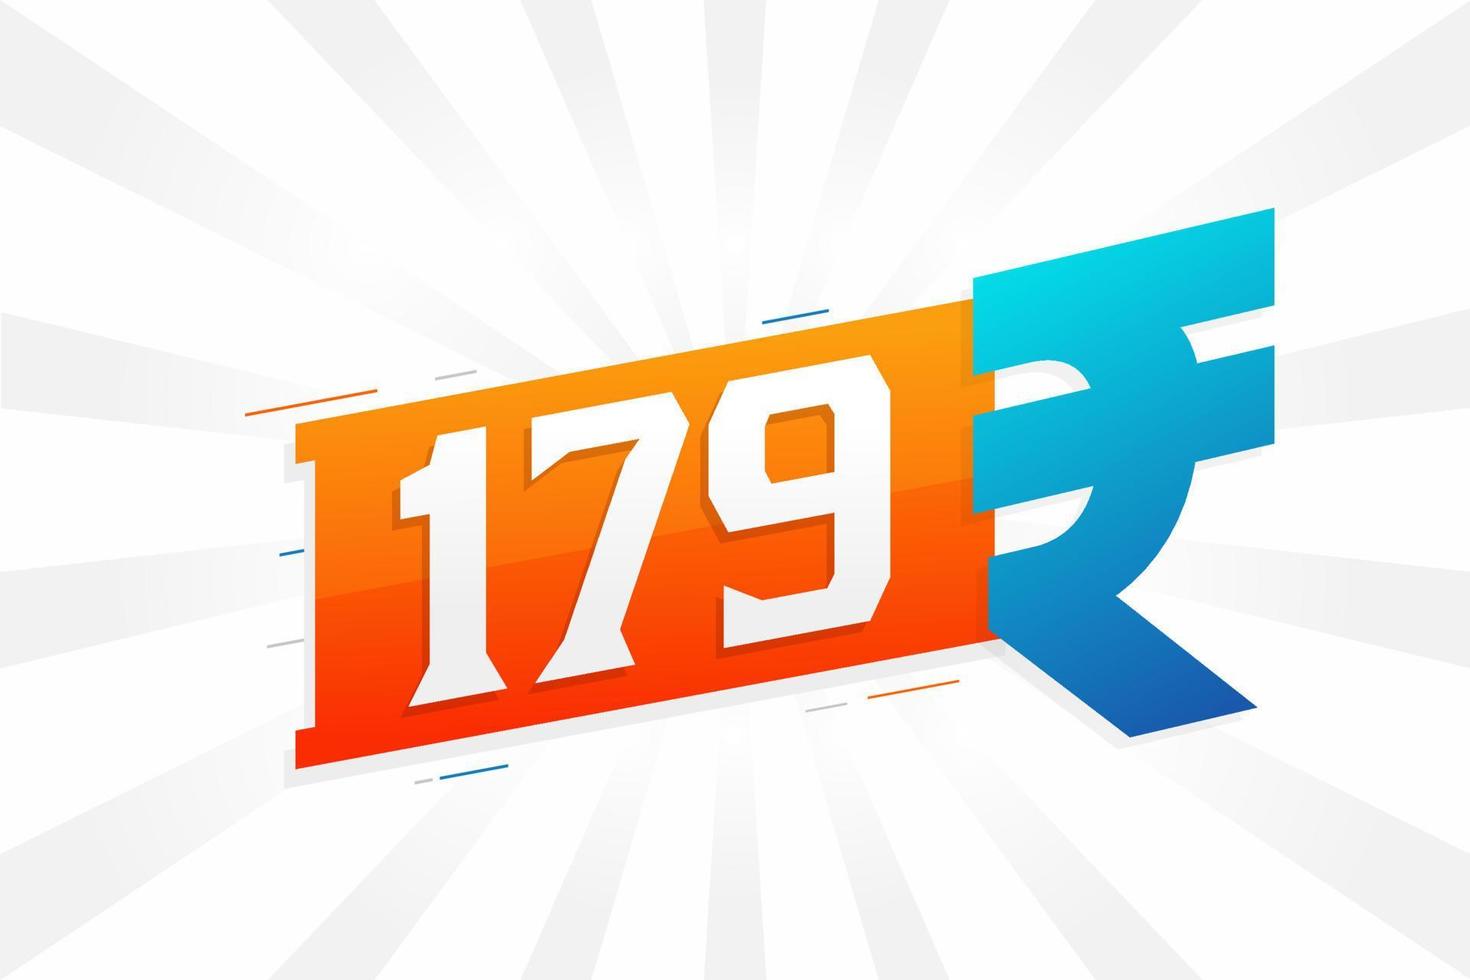 Imagem de vetor de texto em negrito símbolo 179 rupias. ilustração vetorial de sinal de moeda de 179 rupias indianas